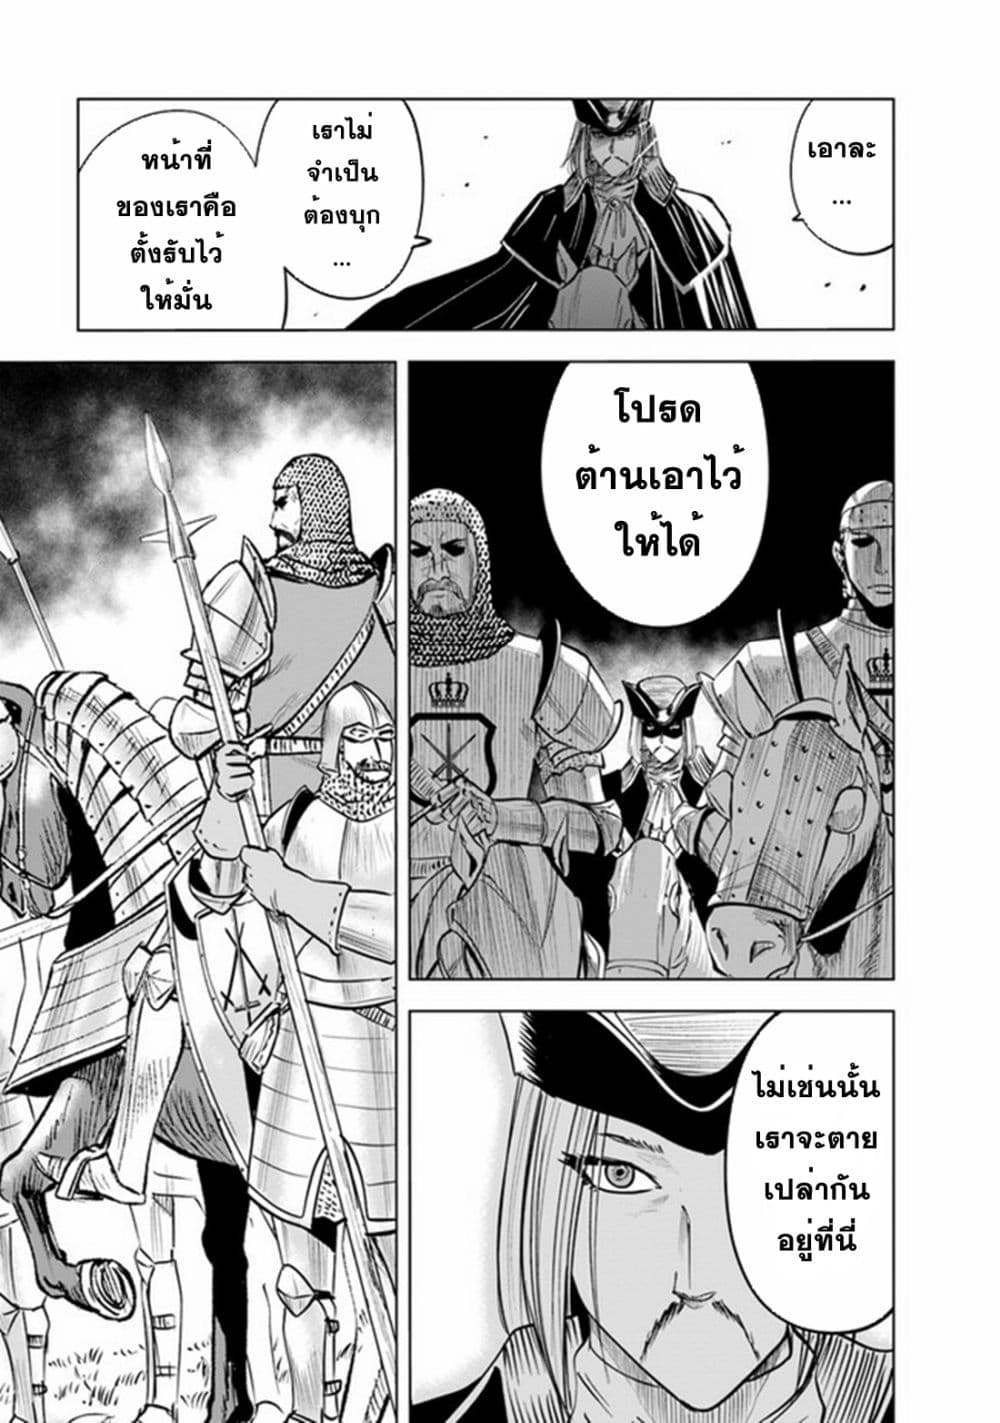 Oukoku e Tsuzuku Michi dorei Kenshi no Nariagari Eiyutan (Haaremu Raifu) - Road to the Kingdom Slave Swordsman the Rise of Heroes - Harem Life 50-50